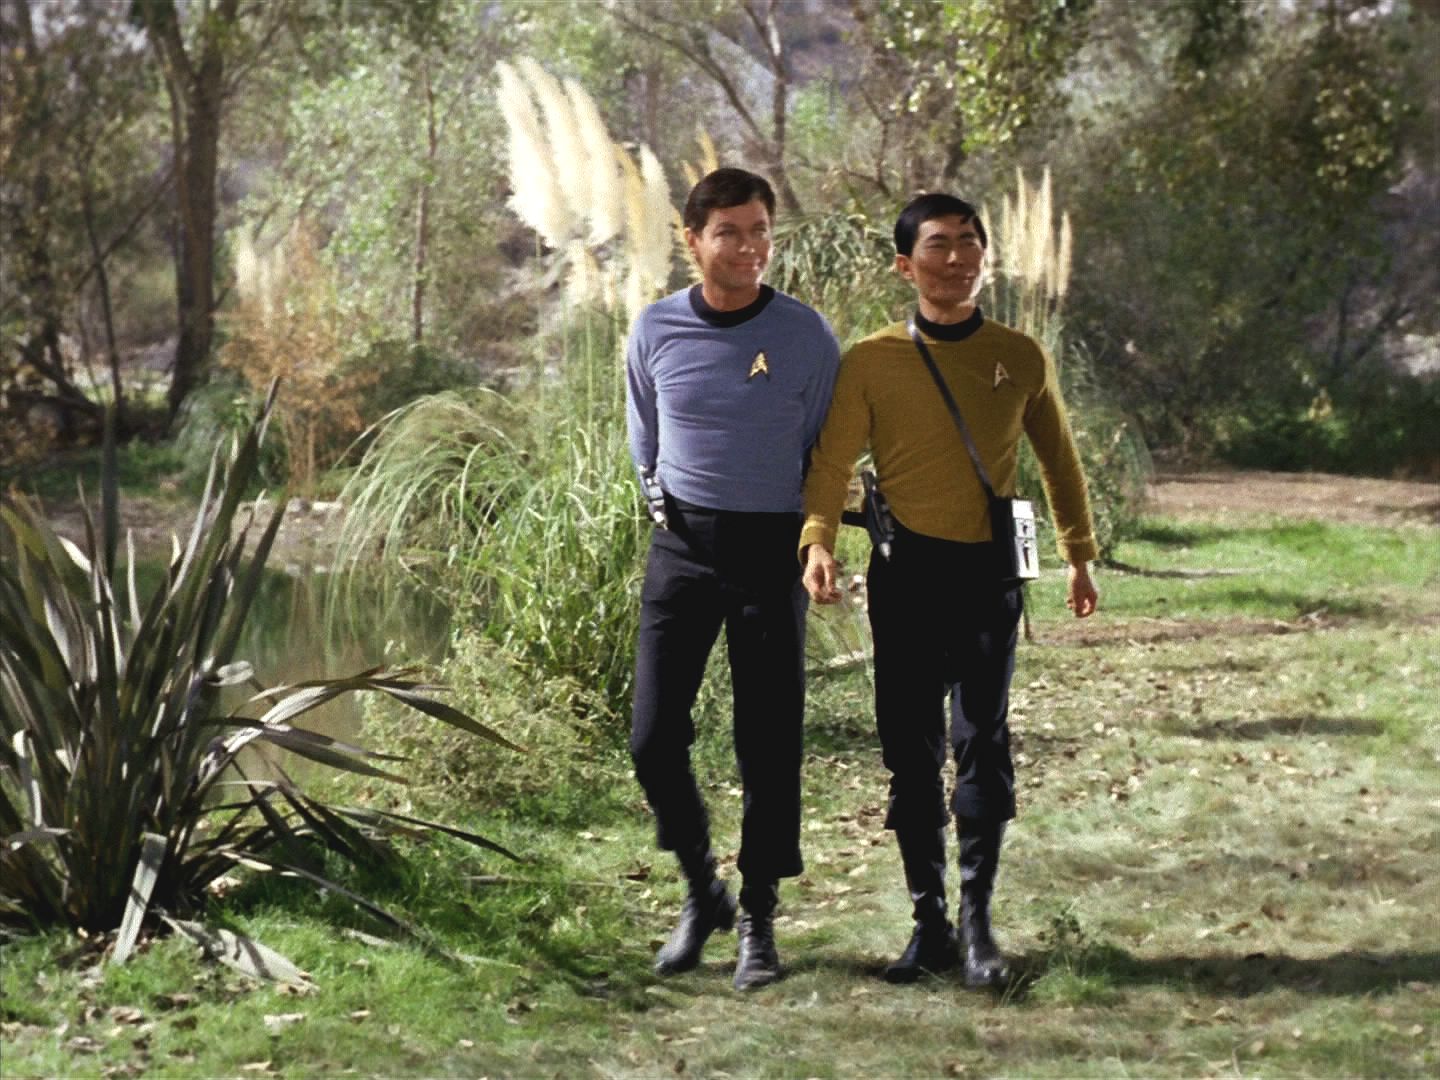 Posádka Enterprise objevila kouzelnou planetu, kde by bylo možné strávit po náročných měsících volno. Doktor a Sulu zkoumají, jaká hrozí nebezpečí. Ale na planetě není ani hmyz!